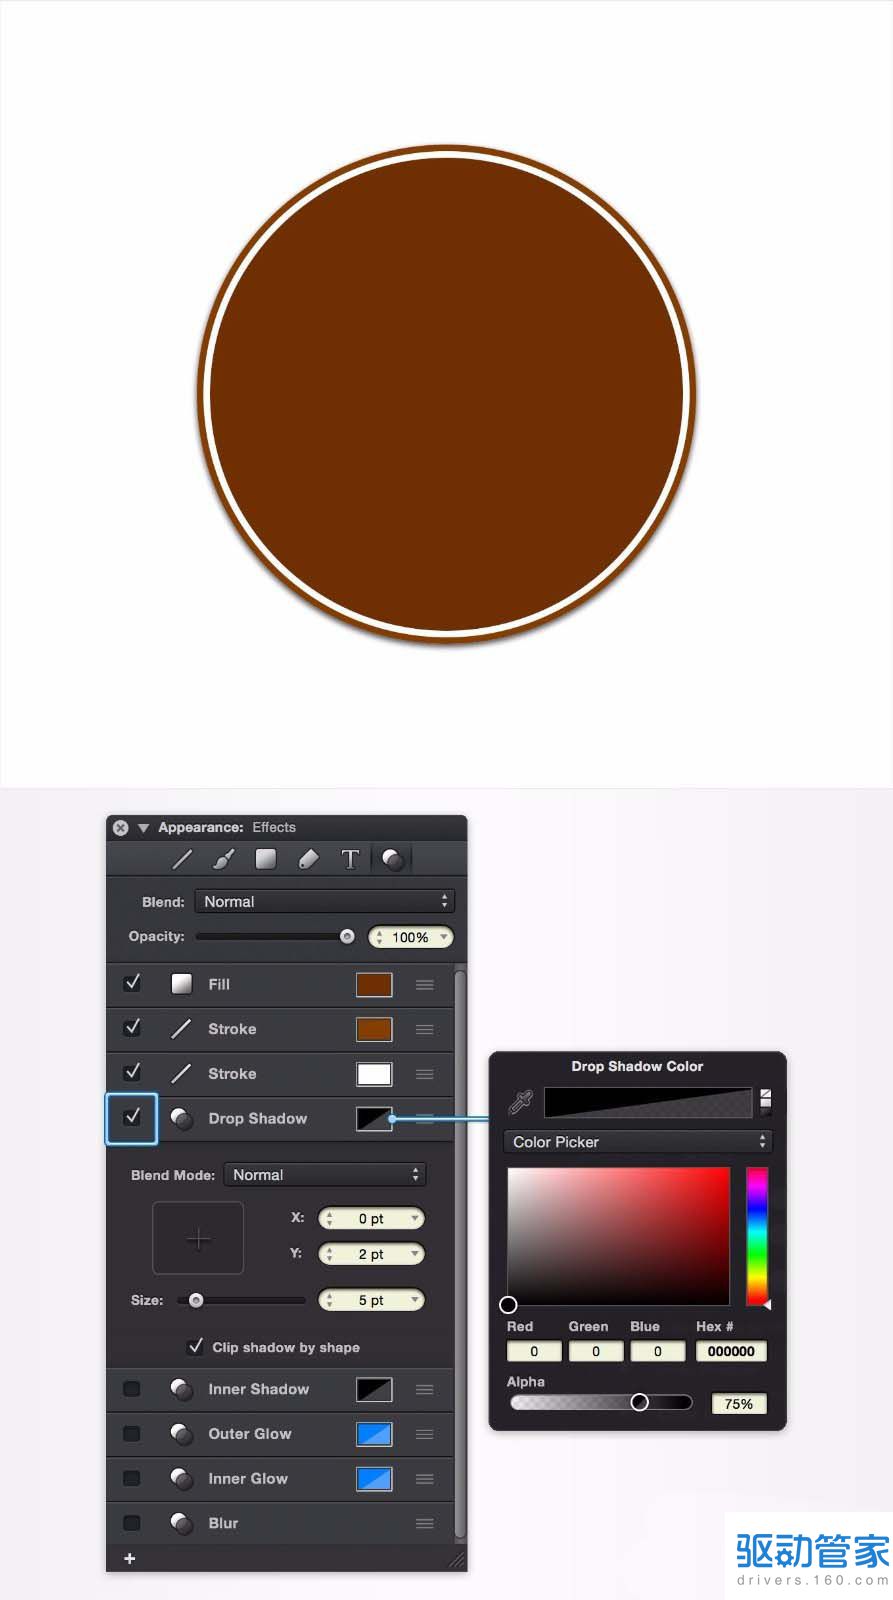 怎么用graphic设计软件设计出带曲线文字的咖啡厅标志